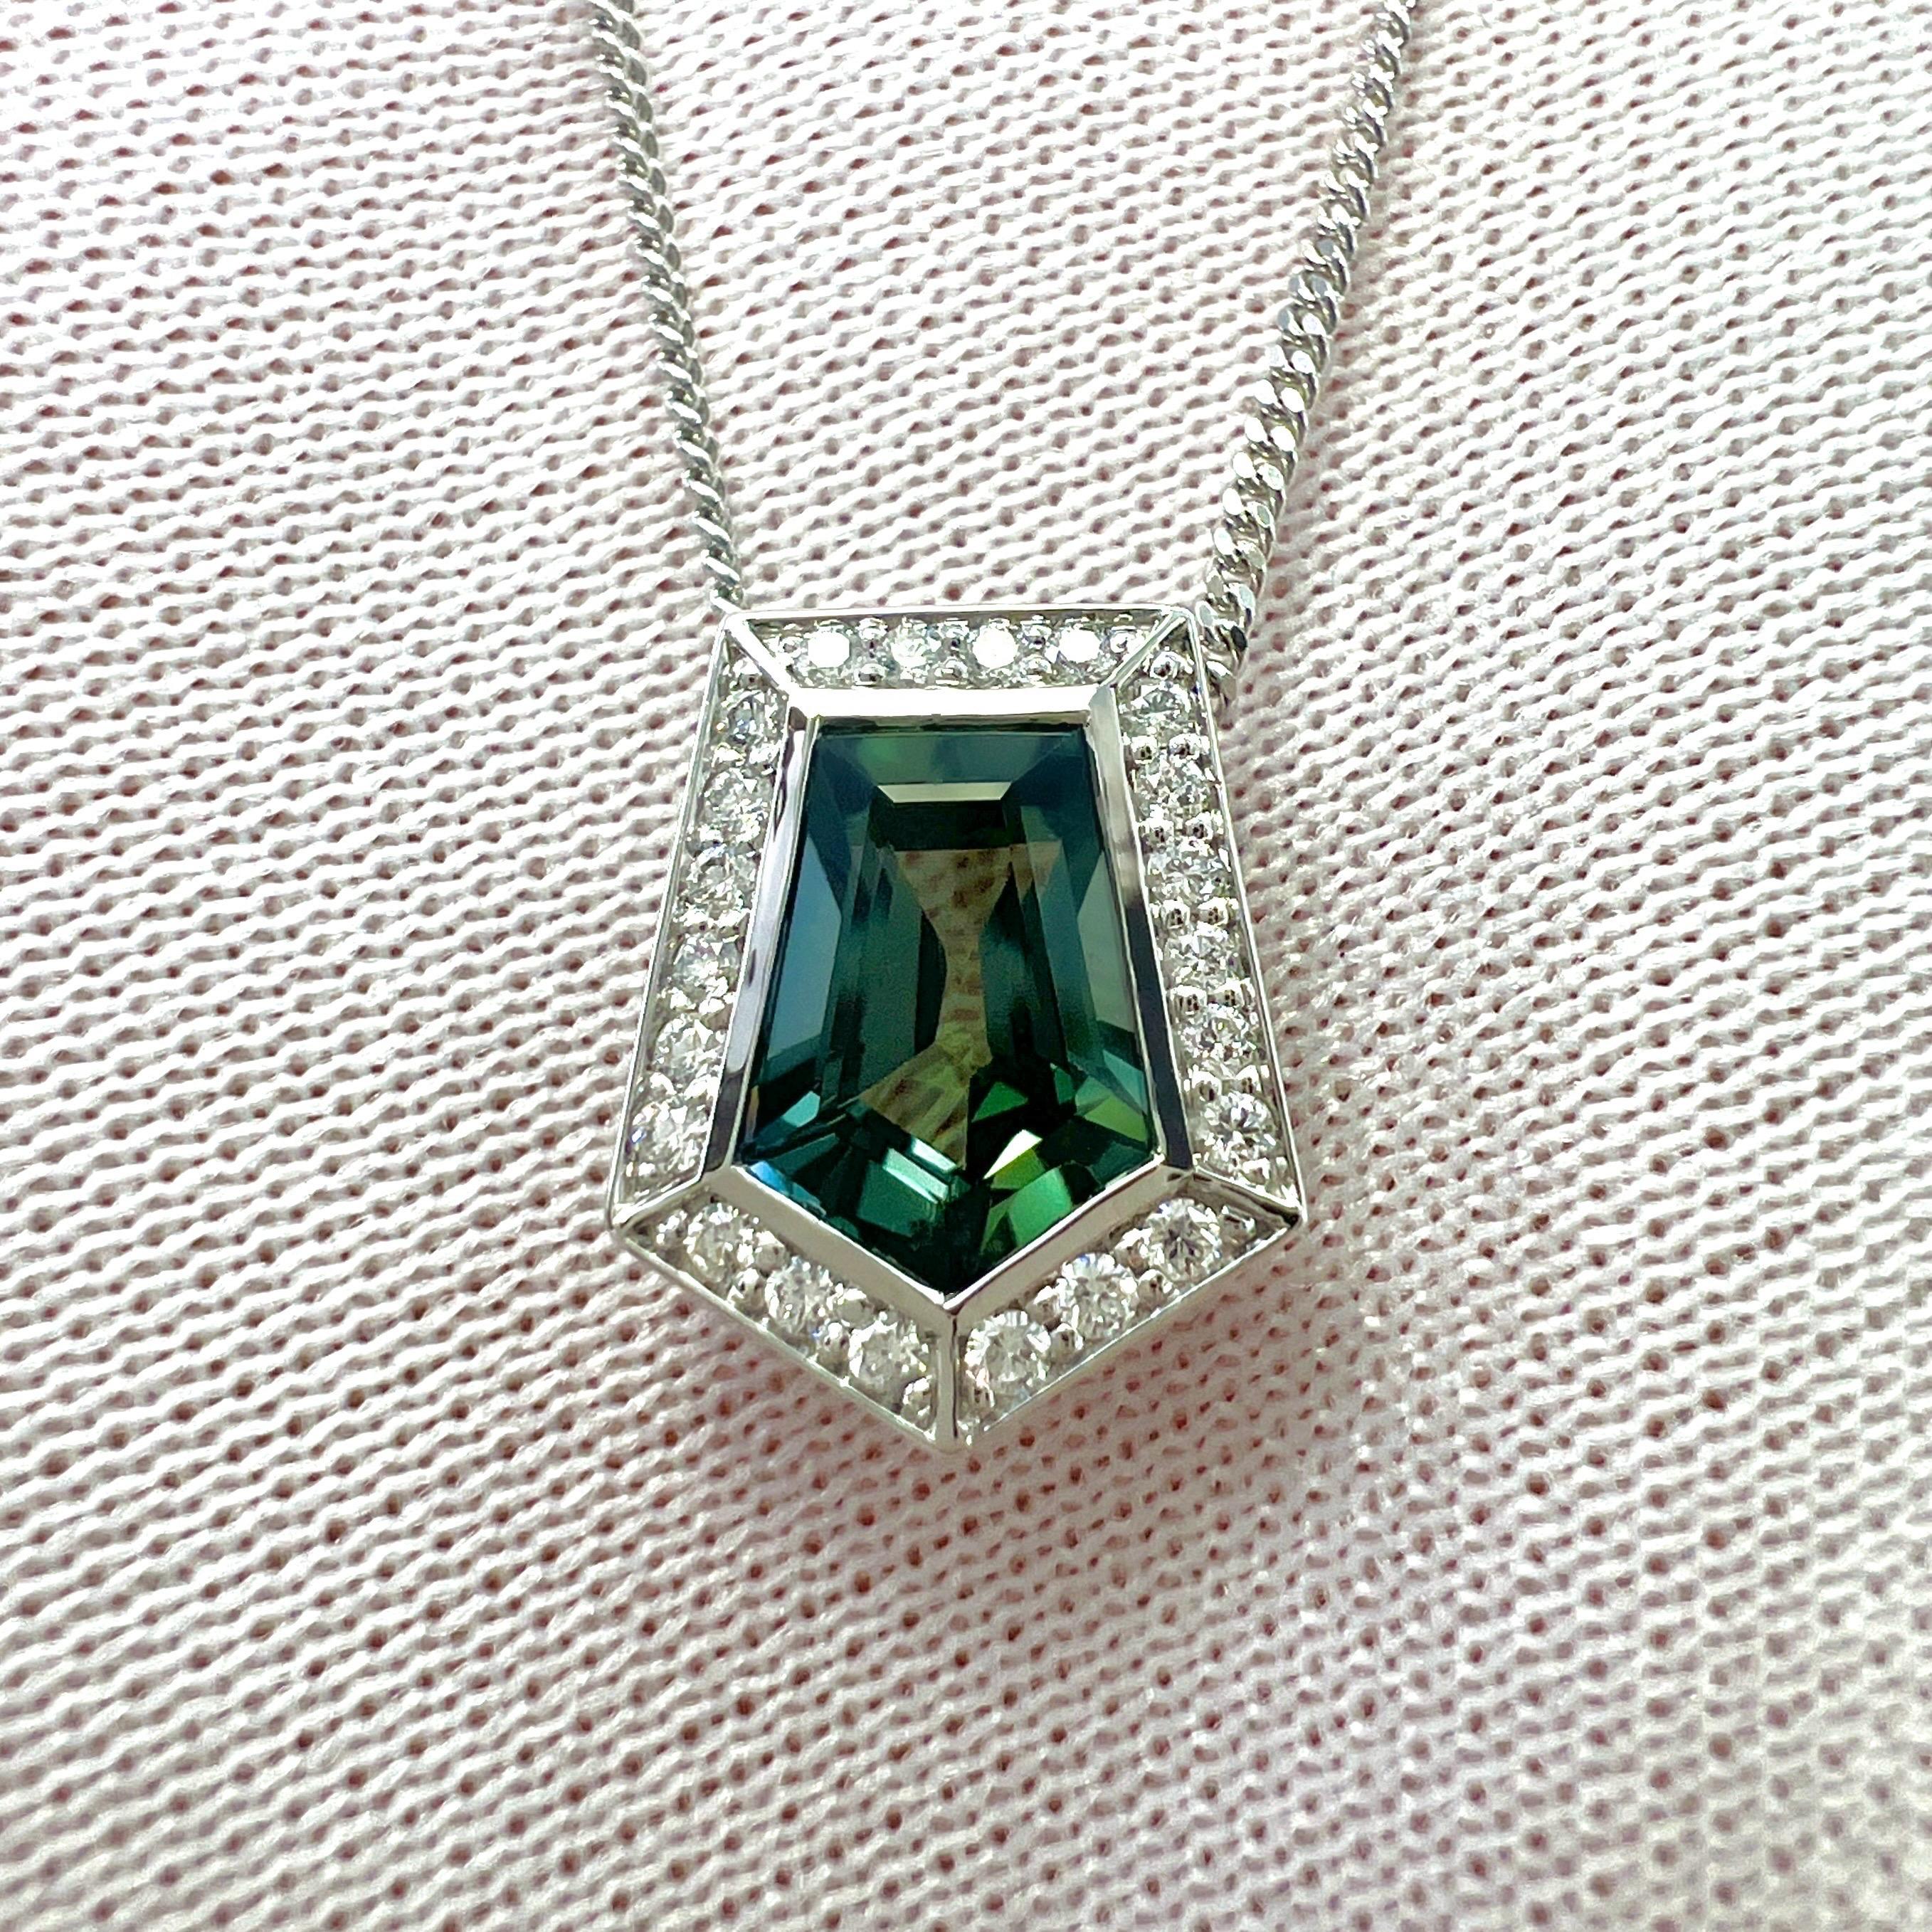 IGI Certified 1.46ct Colour Change Untreated Fancy Cut Sapphire Diamond Pendant For Sale 4